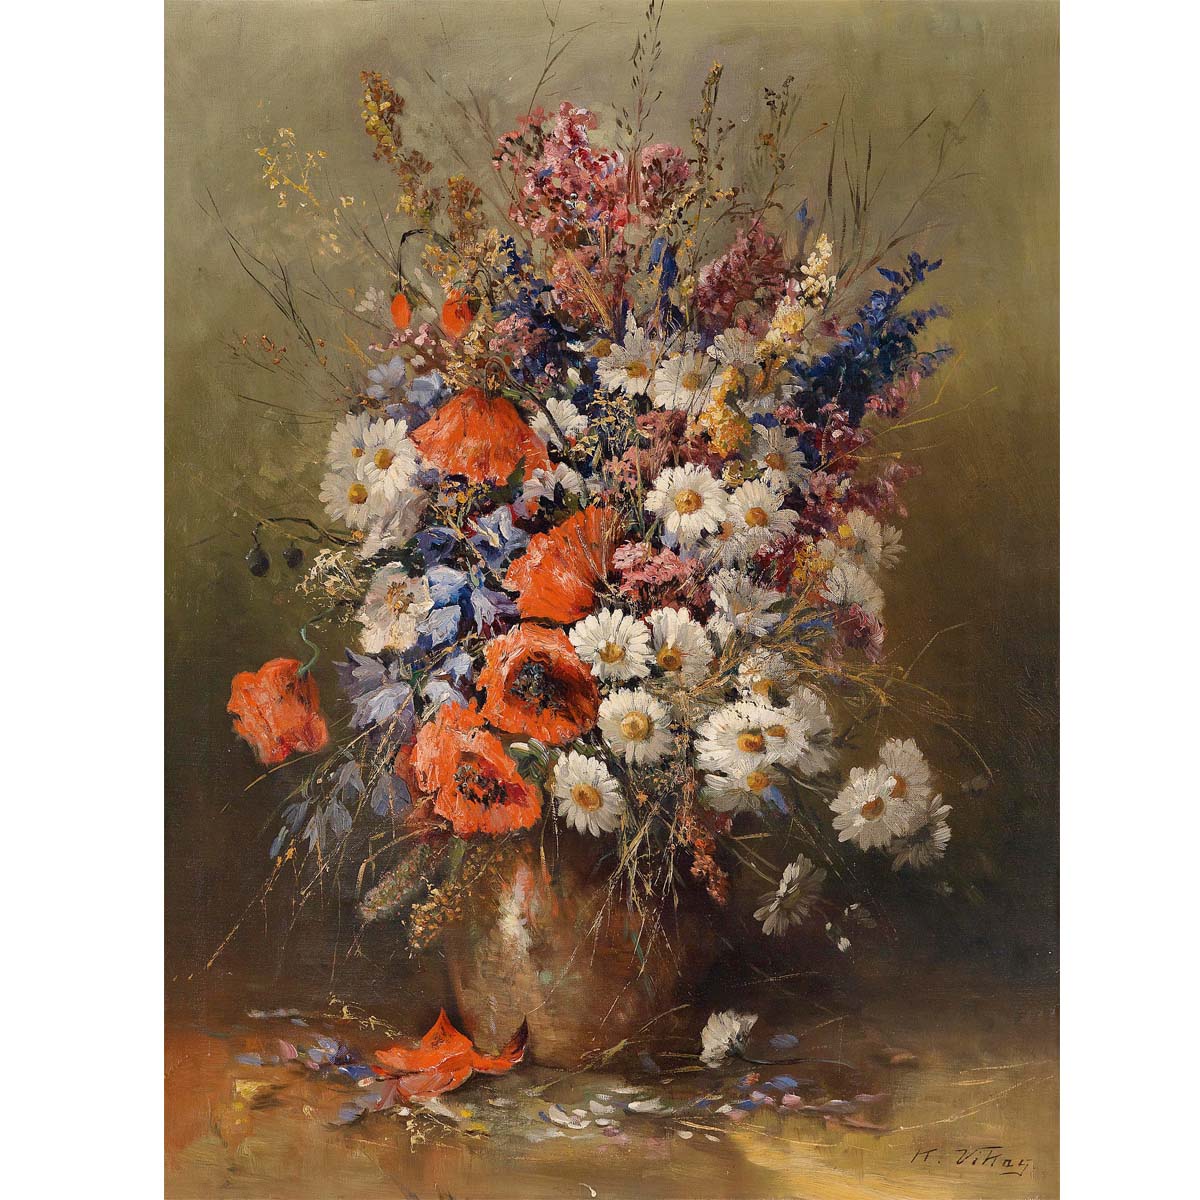 共1813 件油画静物花卉相关商品